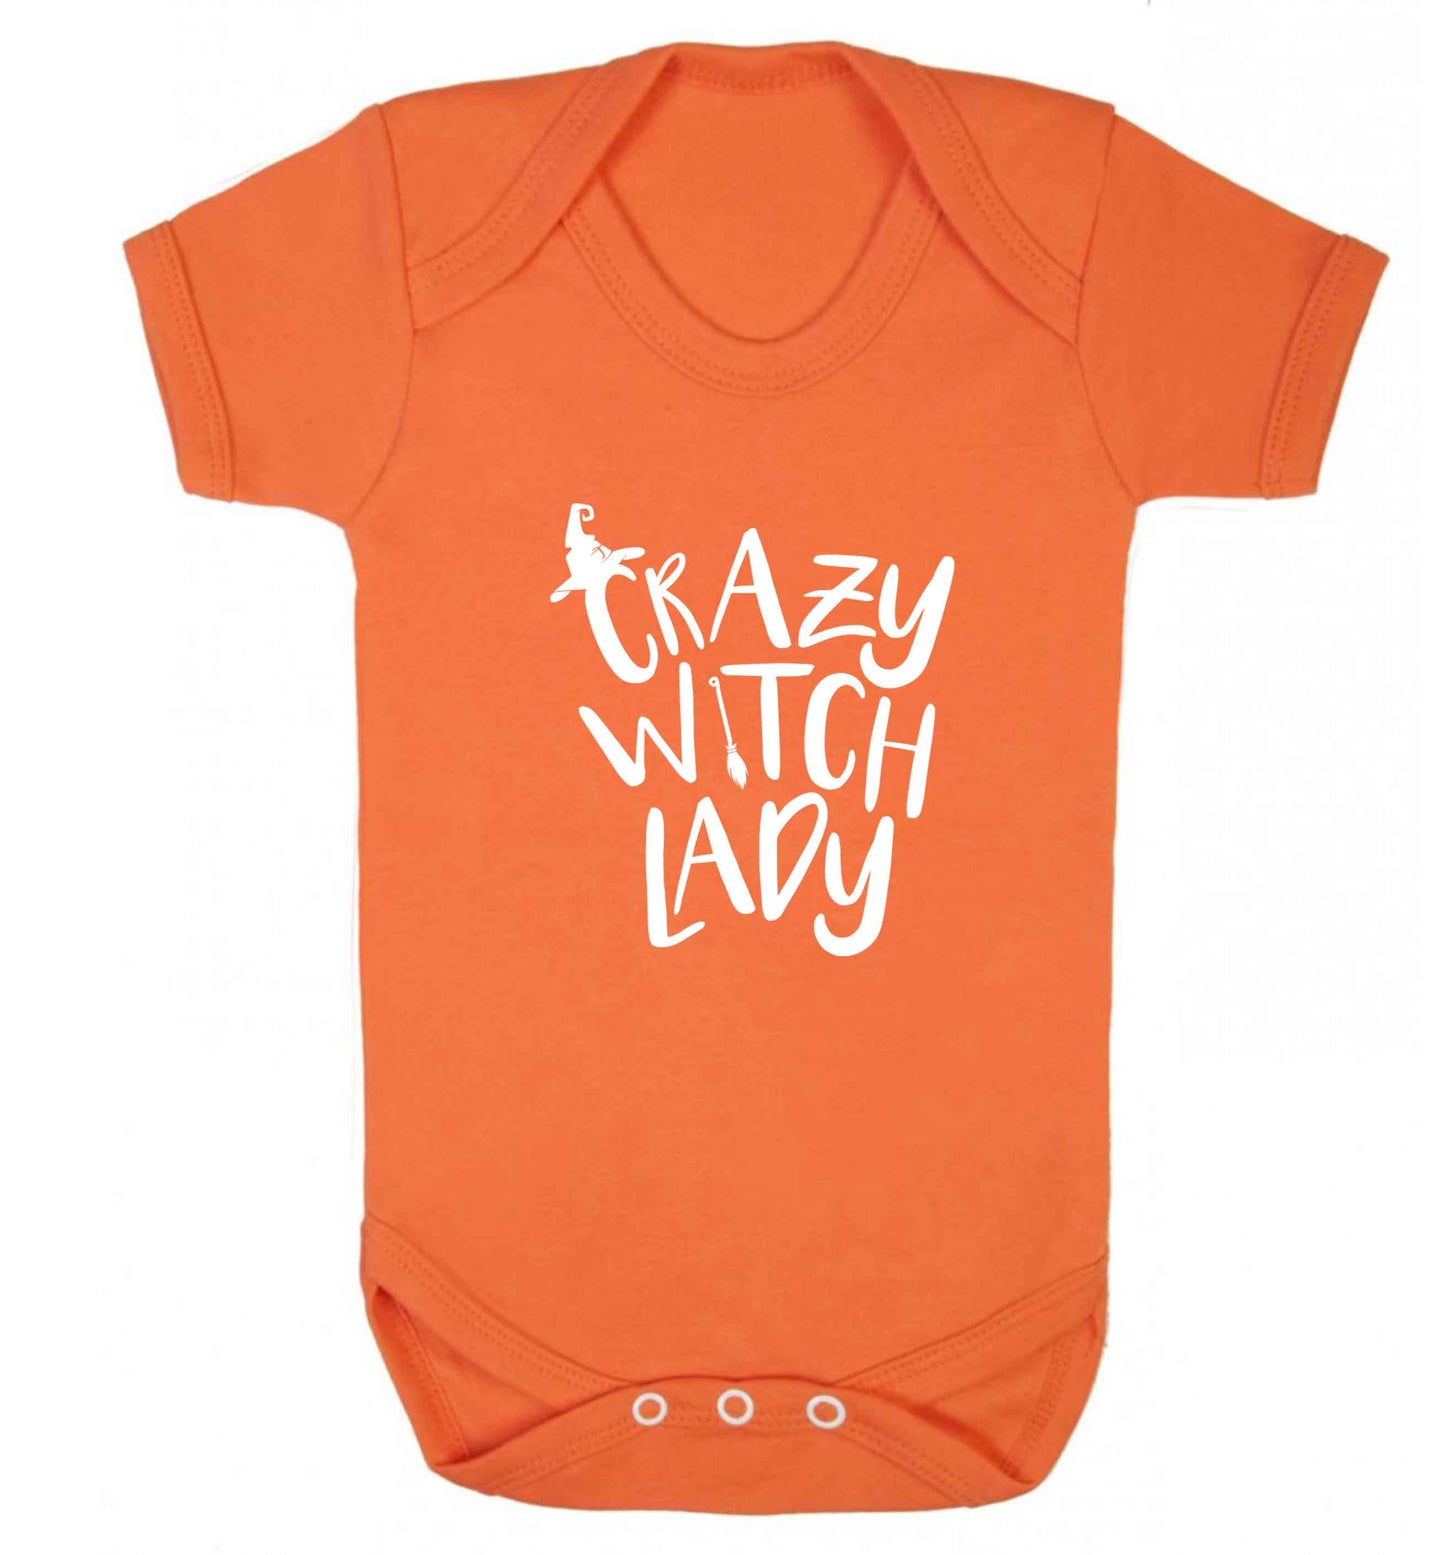 Crazy witch lady baby vest orange 18-24 months